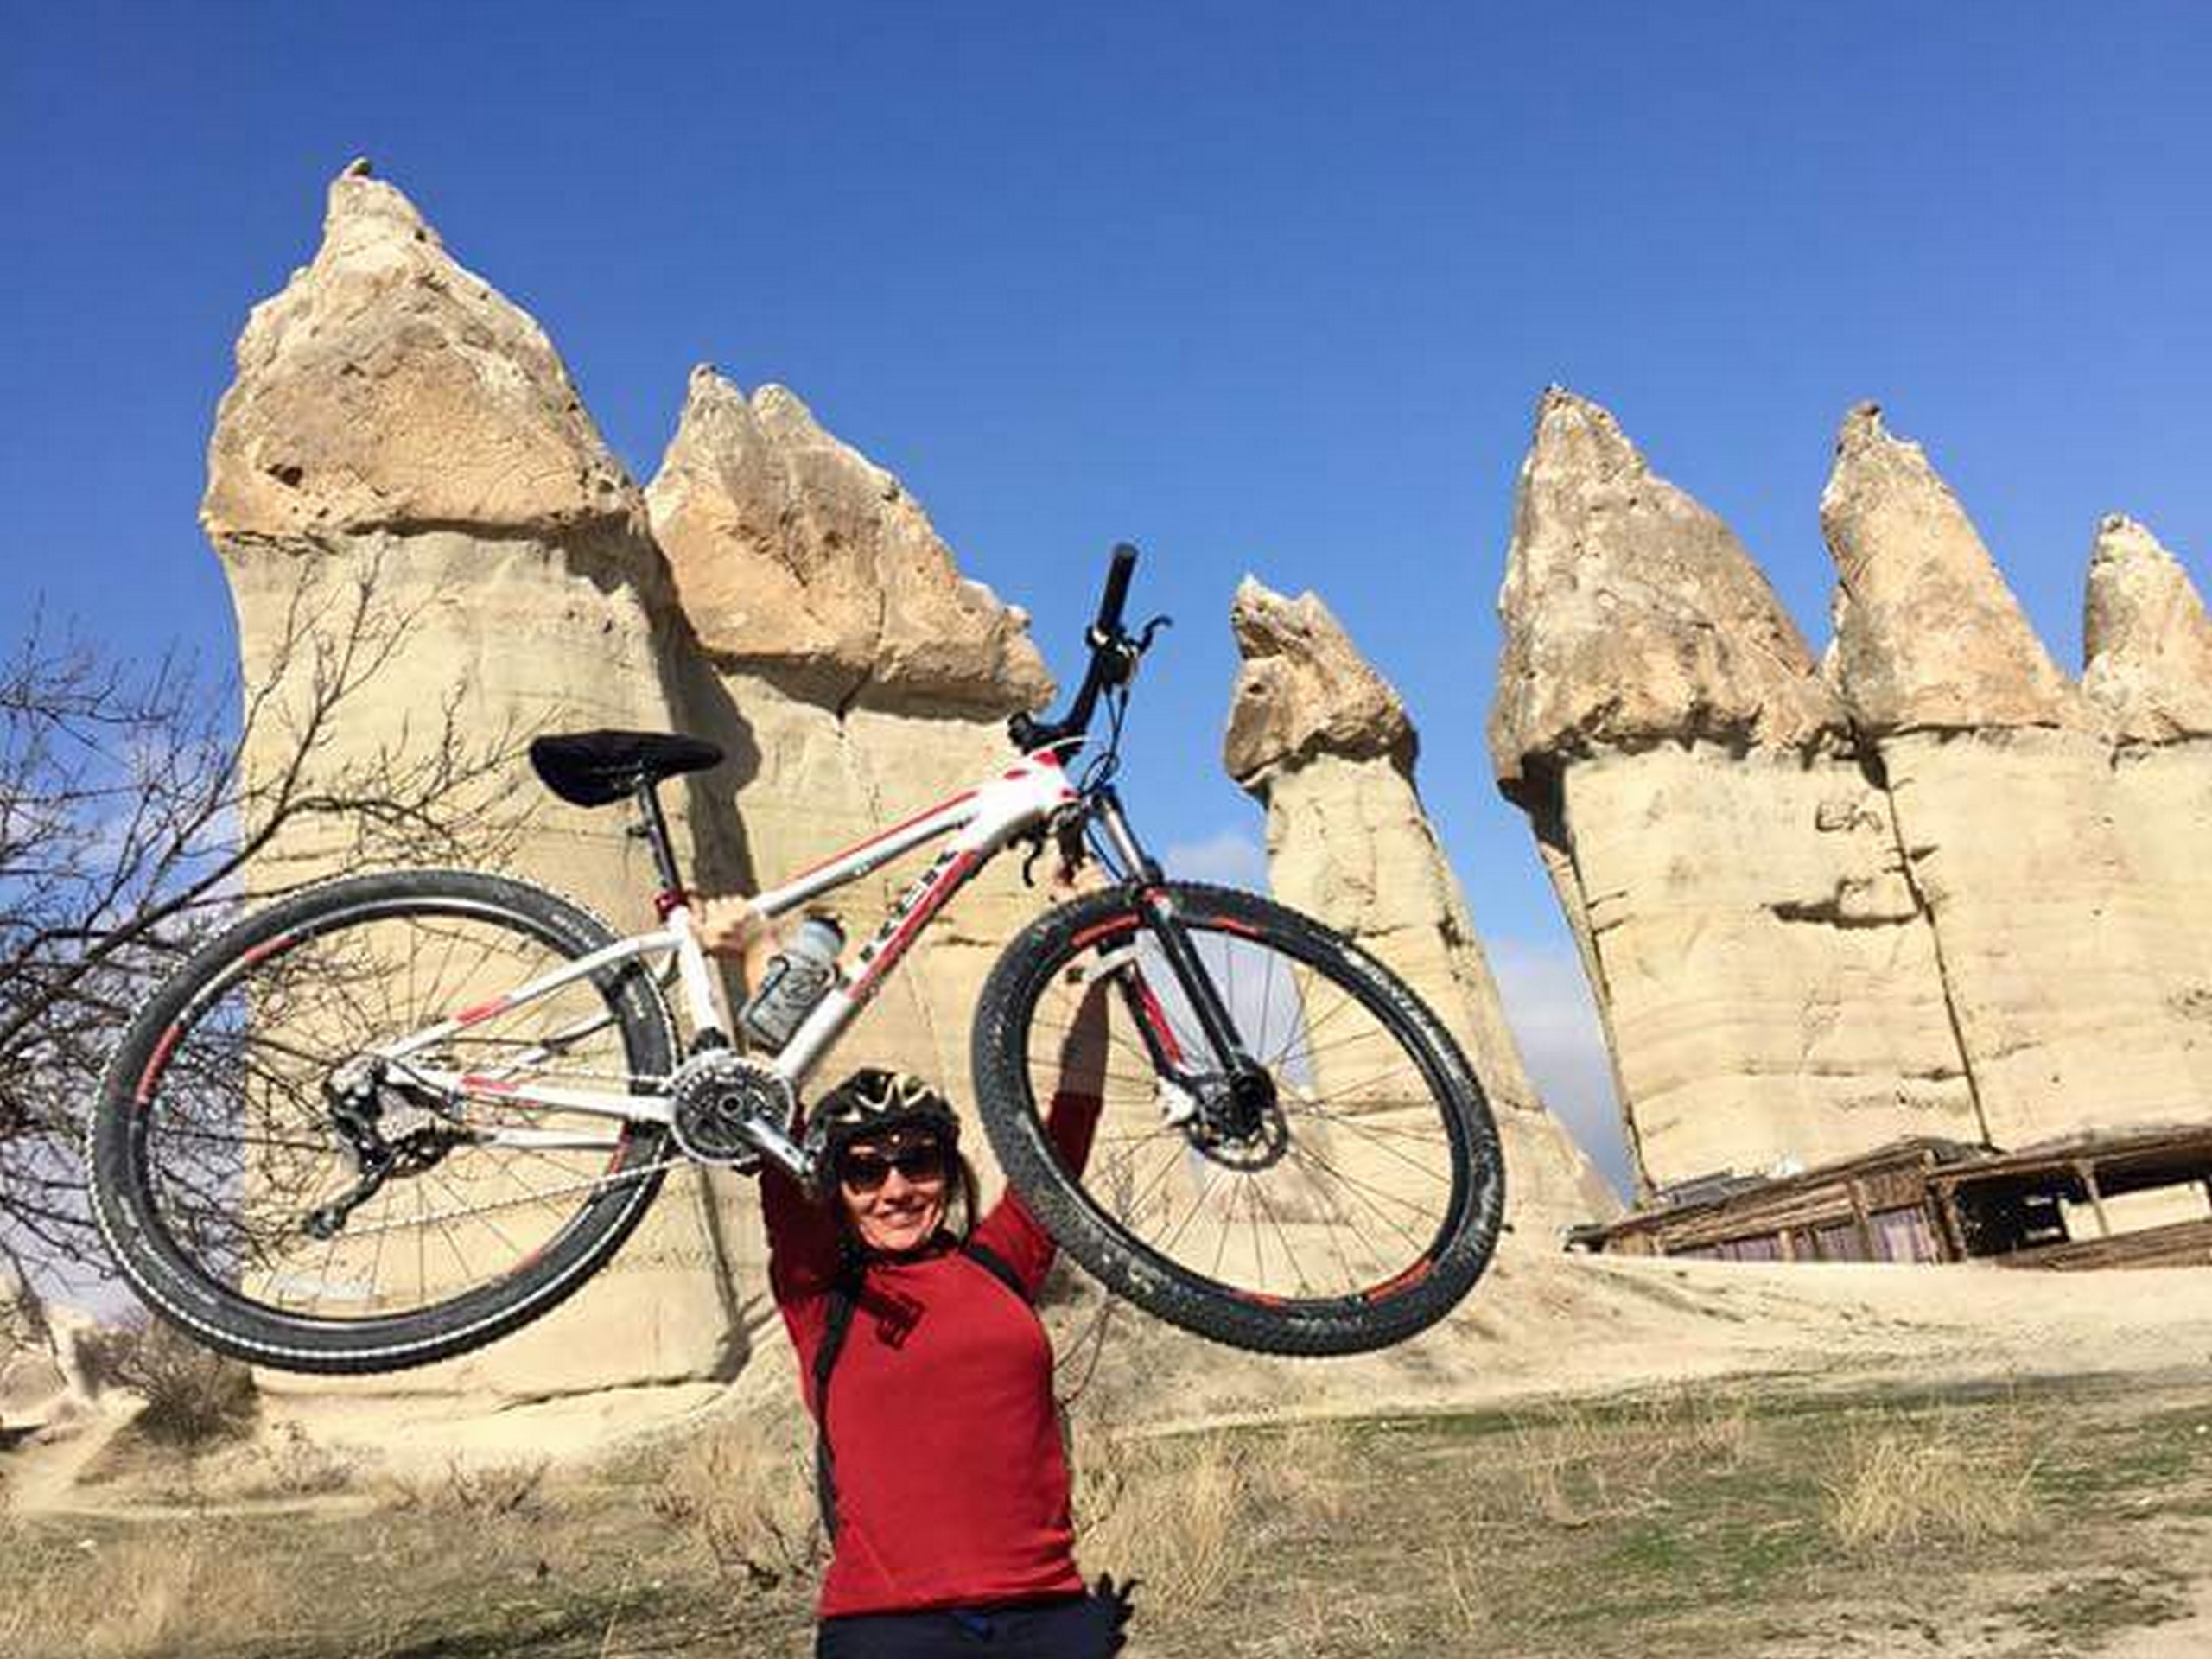 Biker posing with her bike in Cappadocia